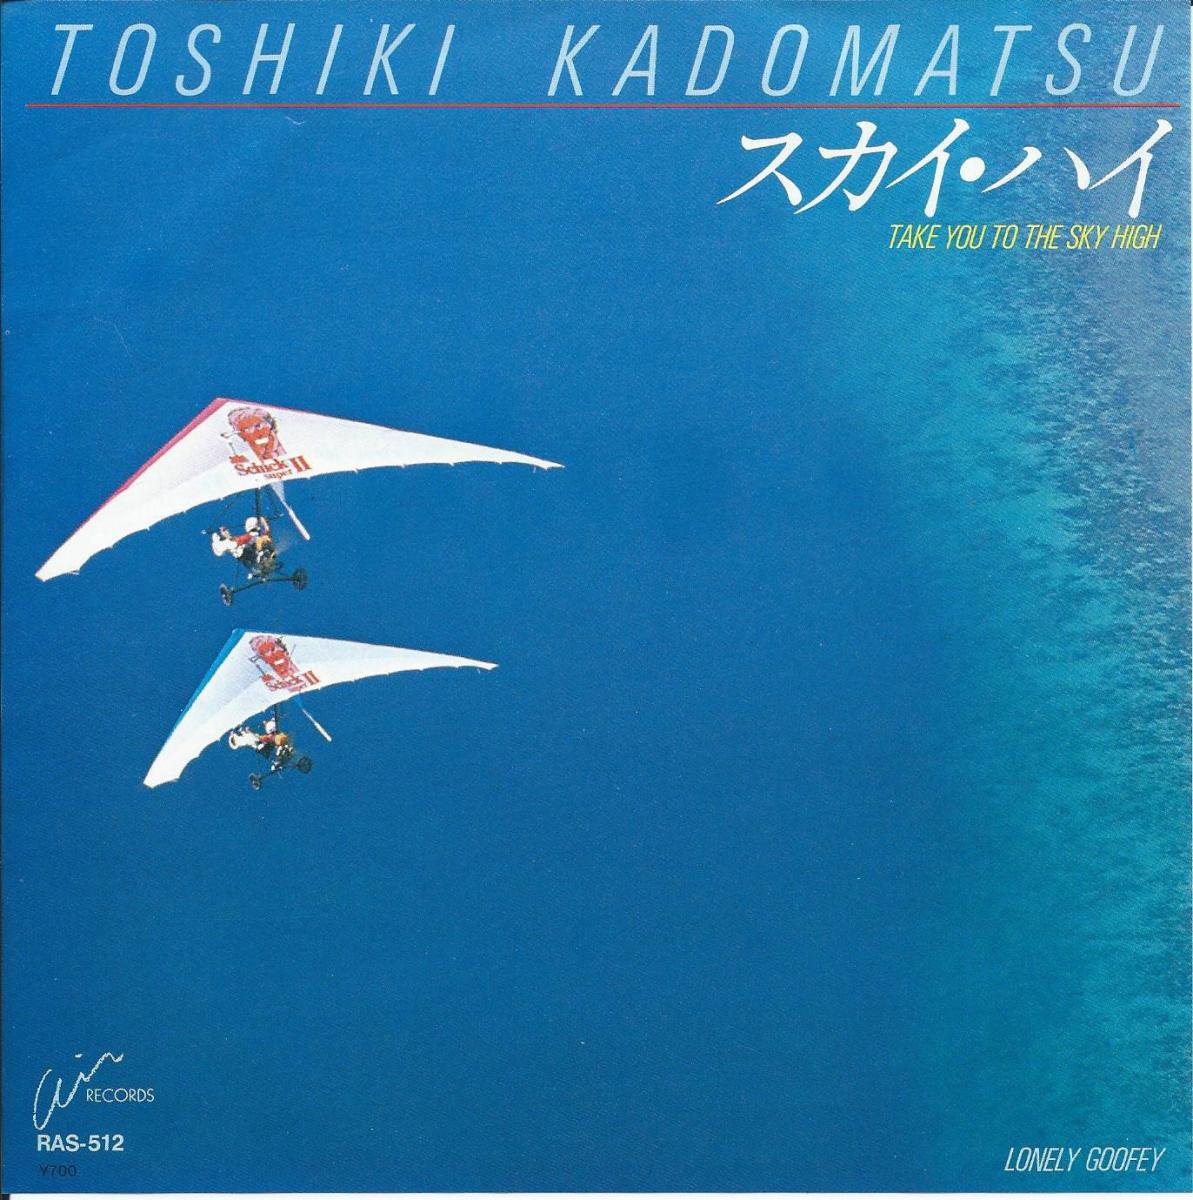 角松敏生 TOSHIKI KADOMATSU / スカイ・ハイ (TAKE YOU TO THE SKY HIGH) / LONELY GOOFEY (7